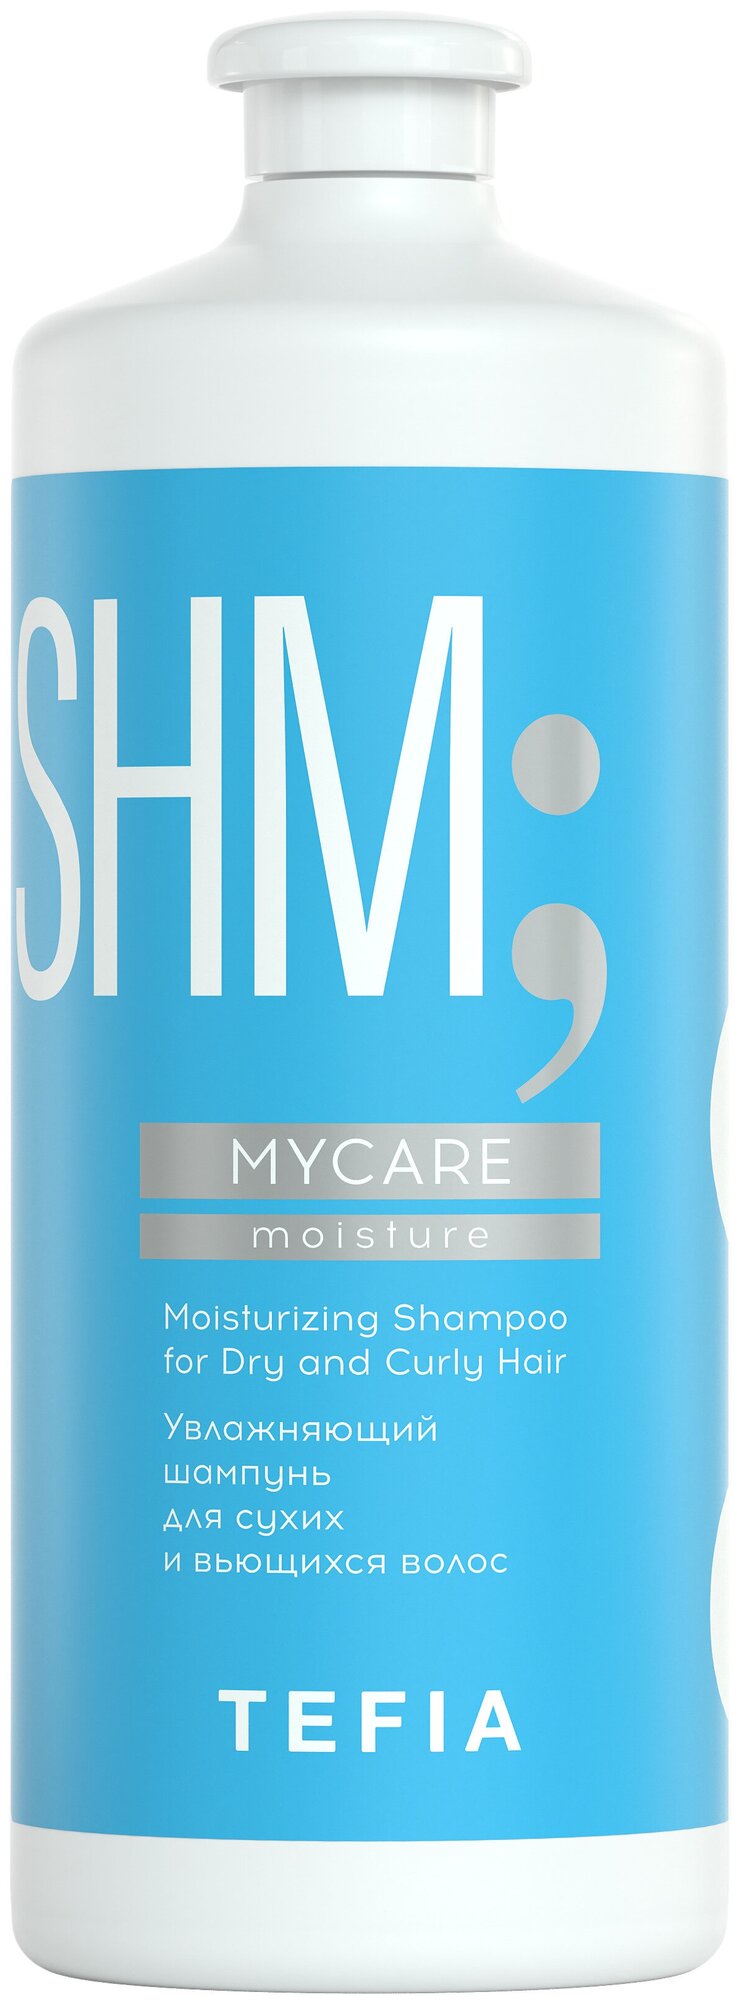 Tefia шампунь SHM MyCare увлажняющий для сухих и вьющихся волос